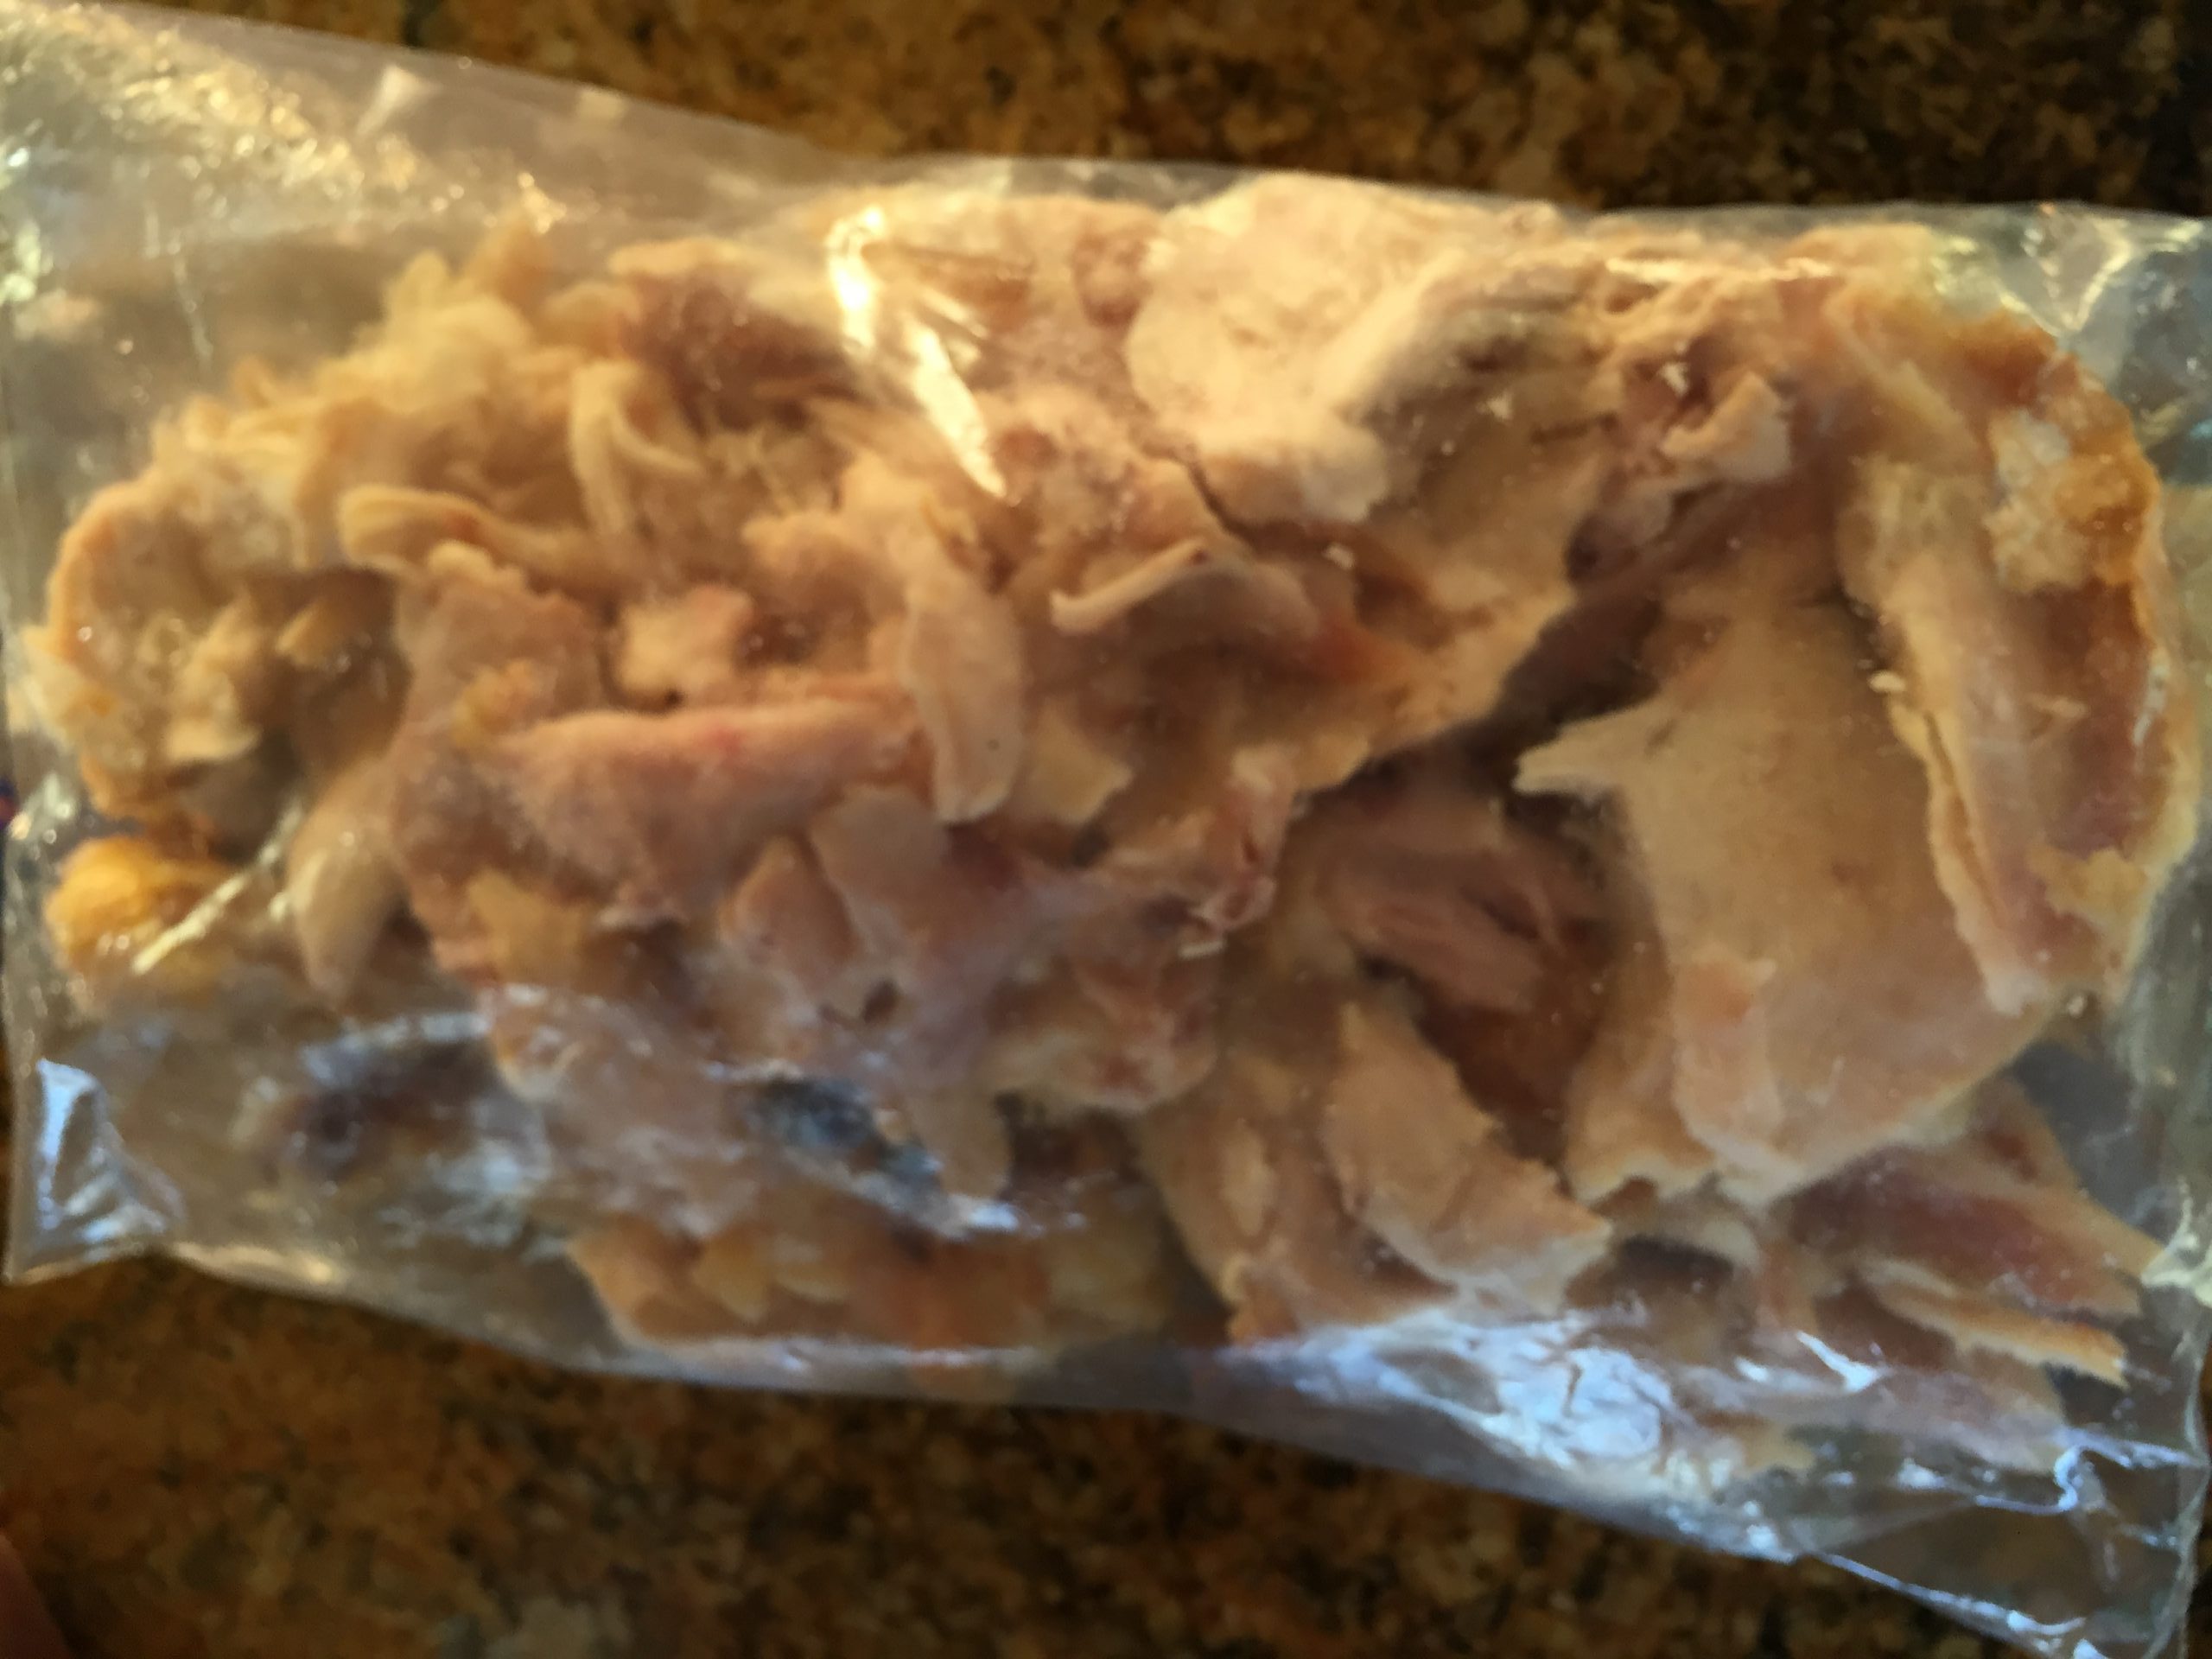 Shredded chicken in ziploc bag for freezing